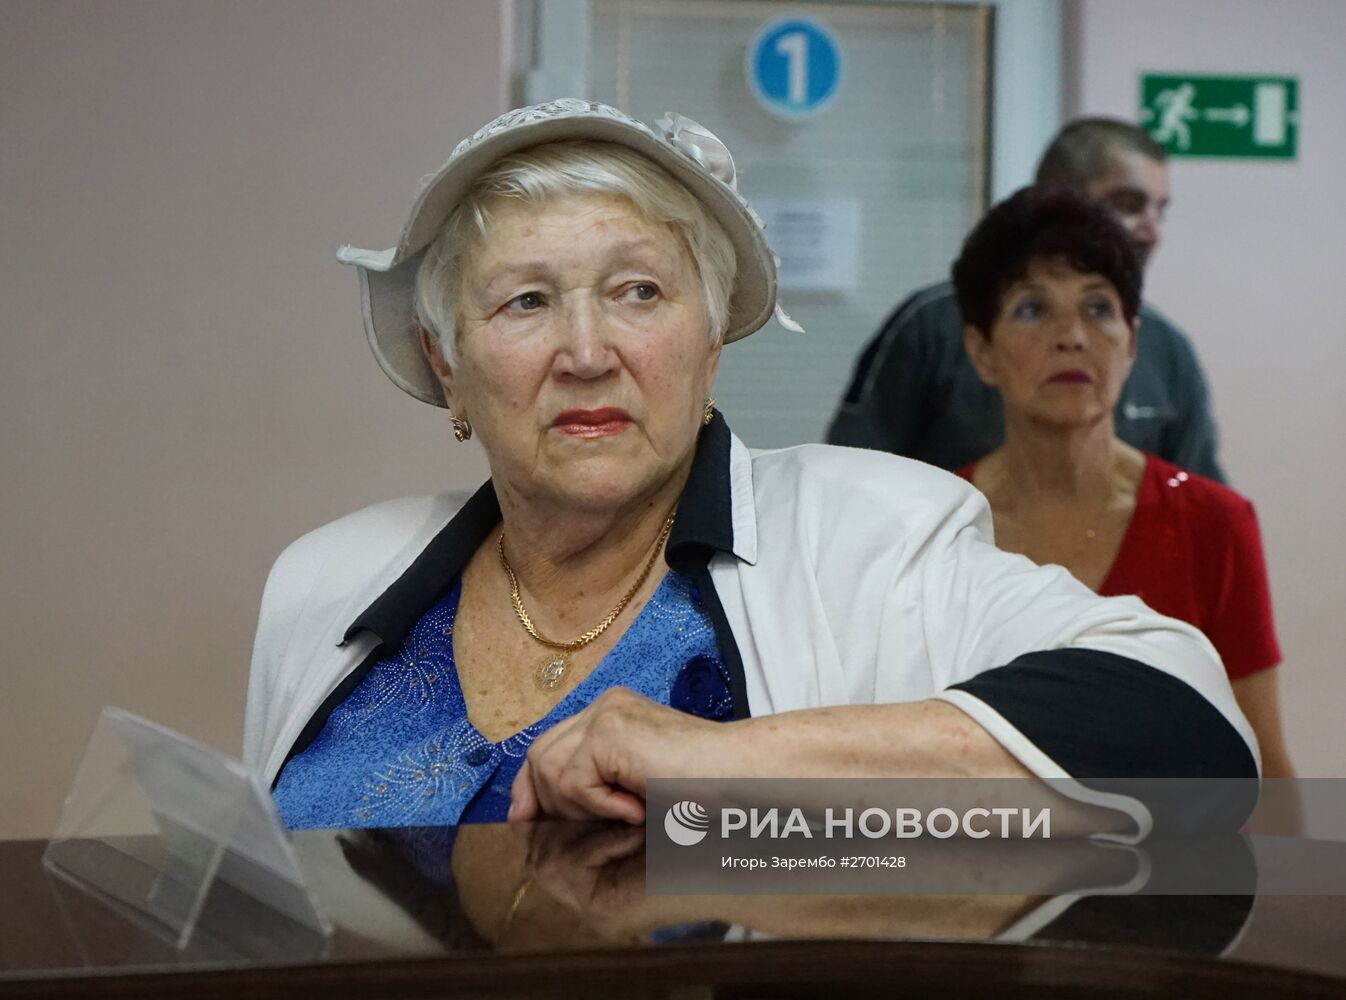 Работа пенсионного фонда в Калининграде